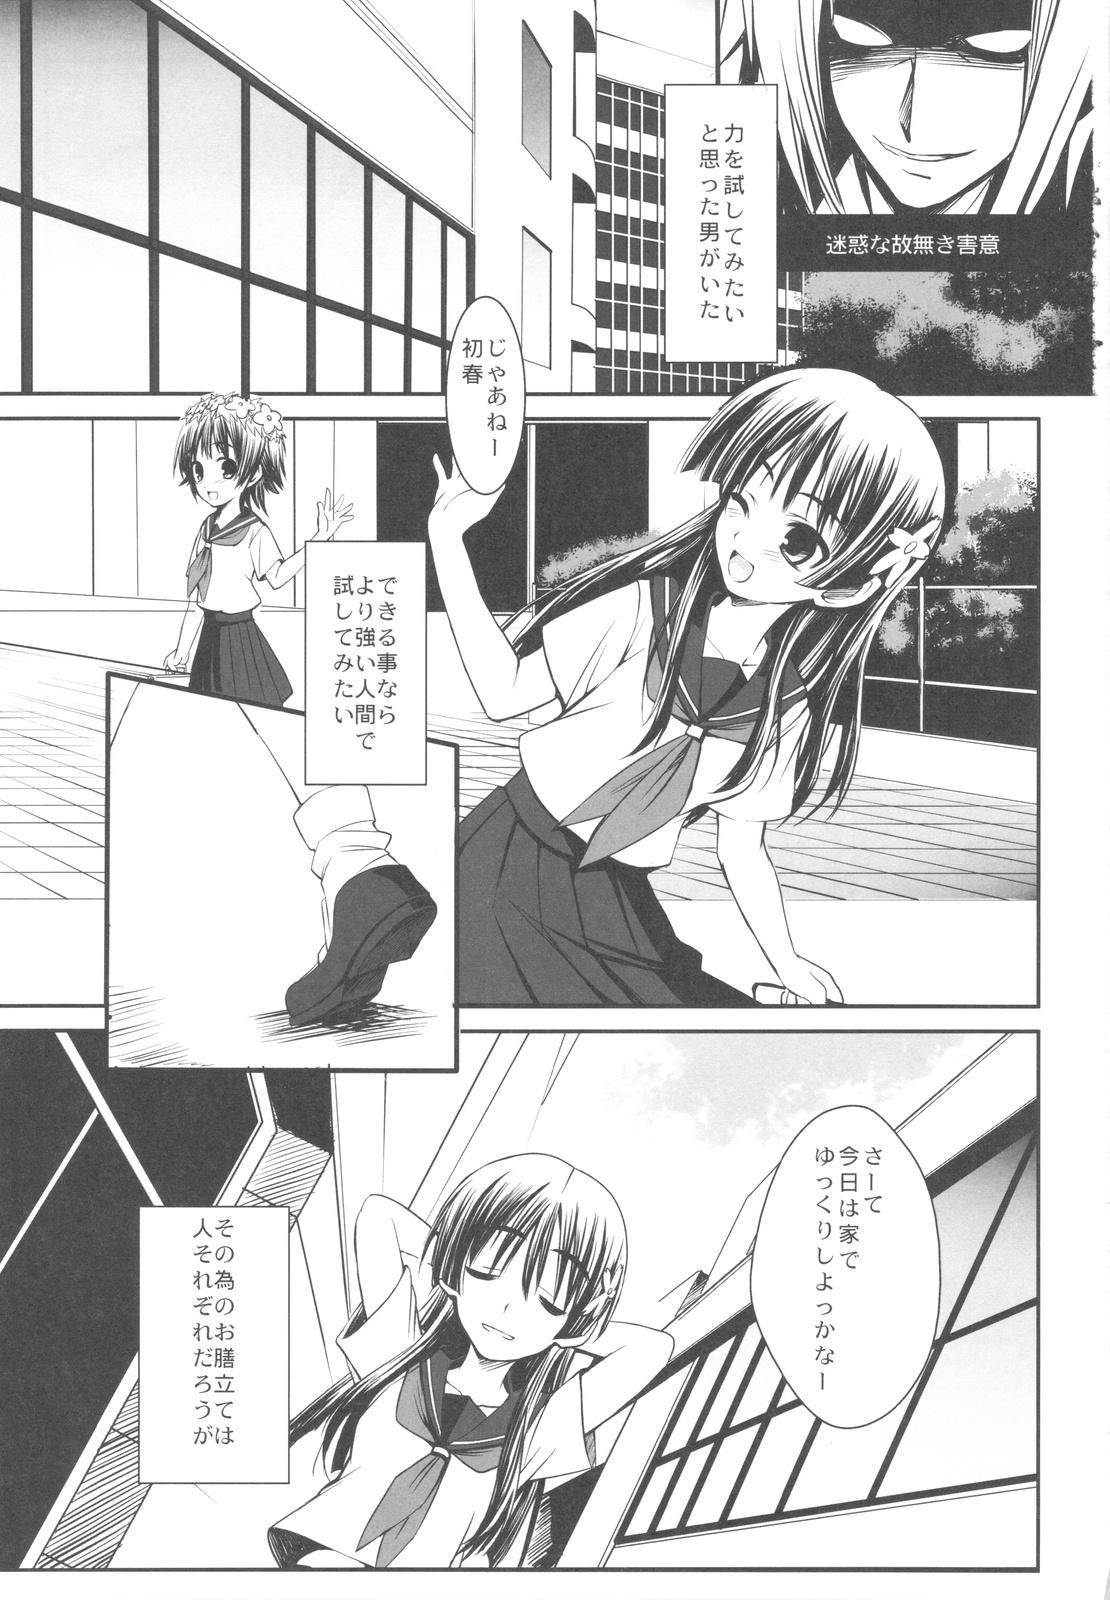 Tats ERECTLIC THUNDER - Toaru kagaku no railgun 8teen - Page 3